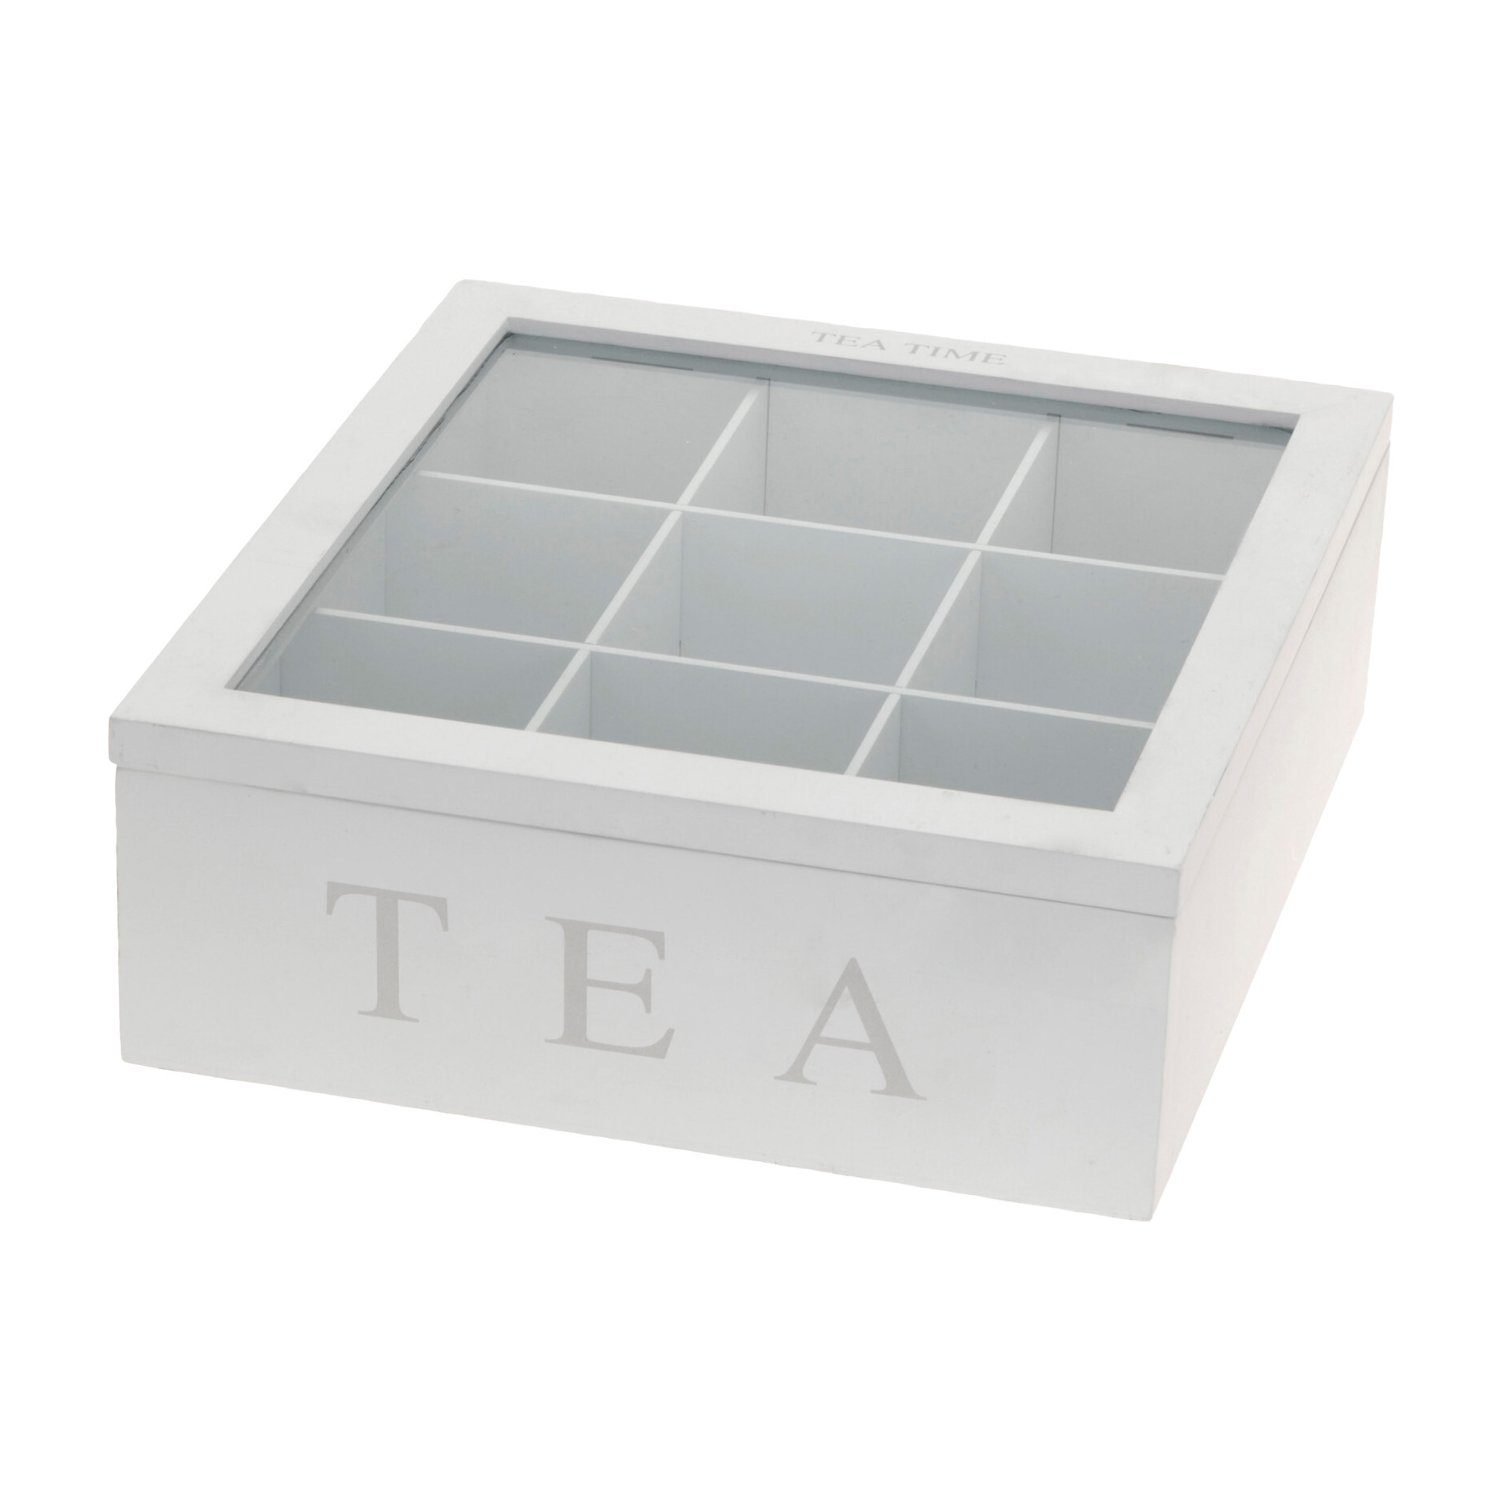 INDA-Exclusiv TEA Nähkästchen Teebox Weiß mit Holz 9-Fächer Deckel Aufschrift